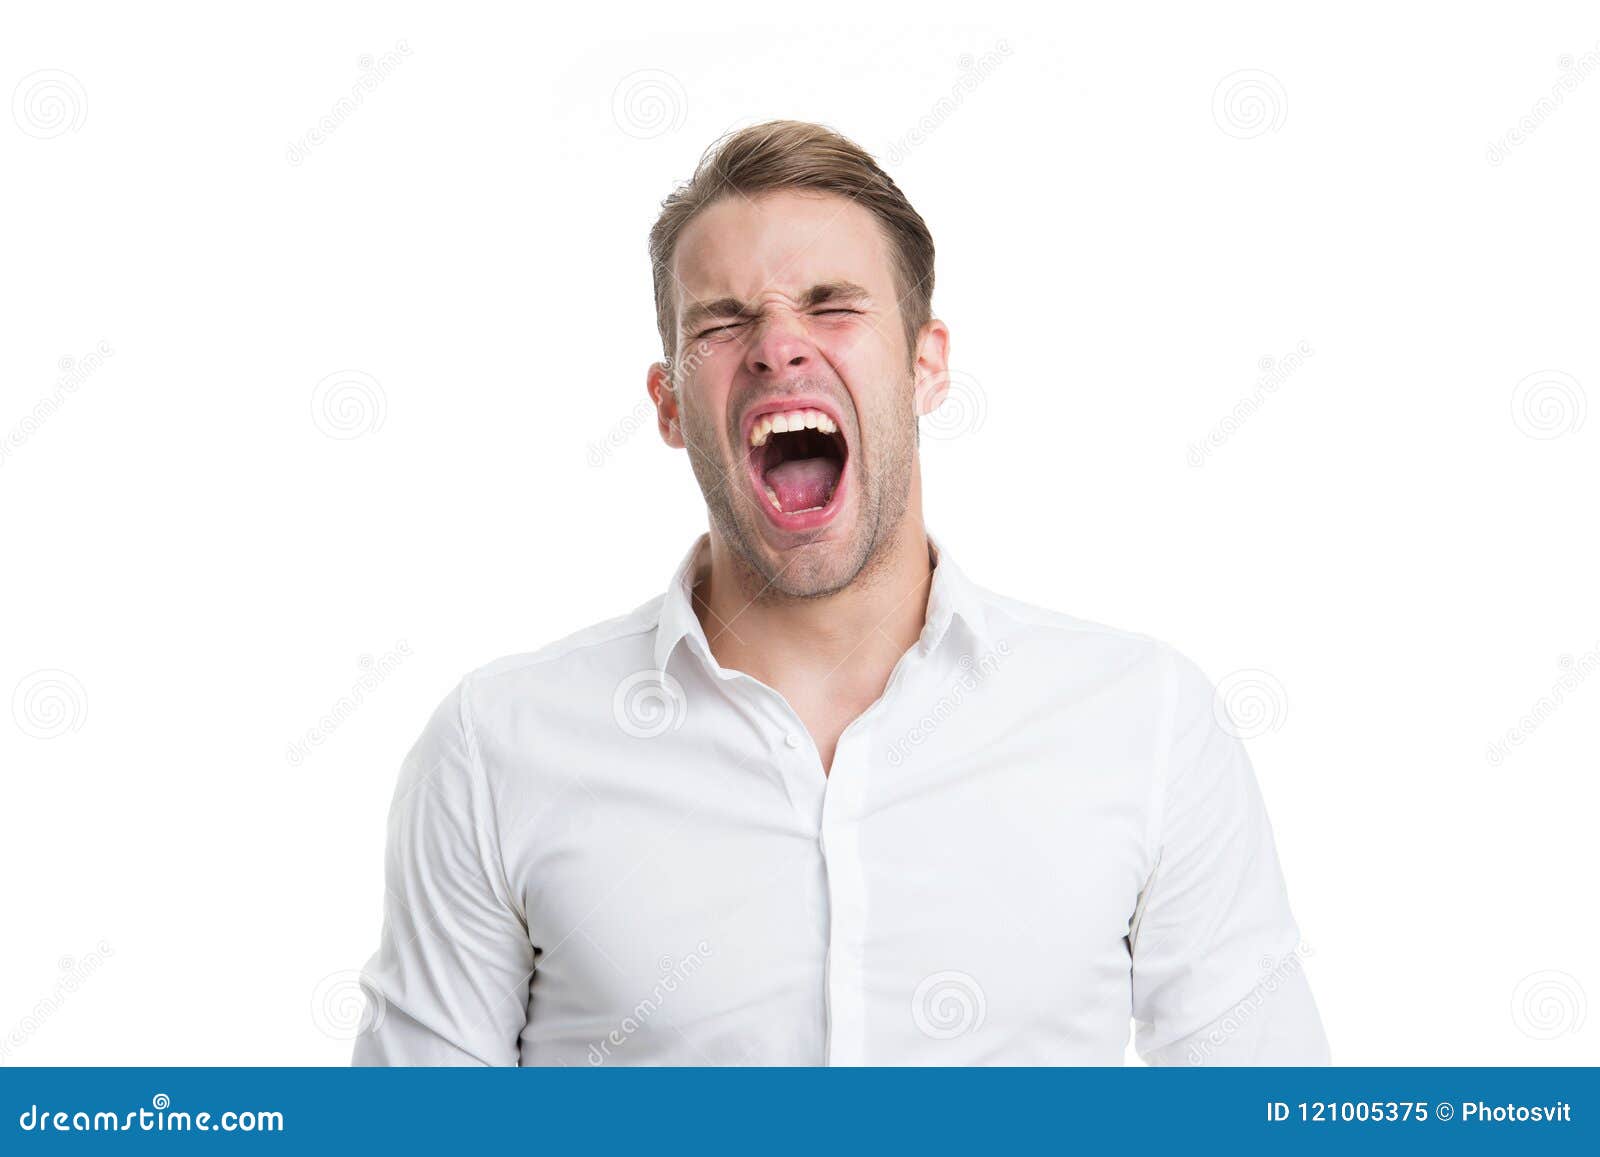 Раздирает рот зевота шире мексиканского. Зевающий человек. Парень зевает. Зевнуть с закрытым ртом. Портрет зевающего человека.